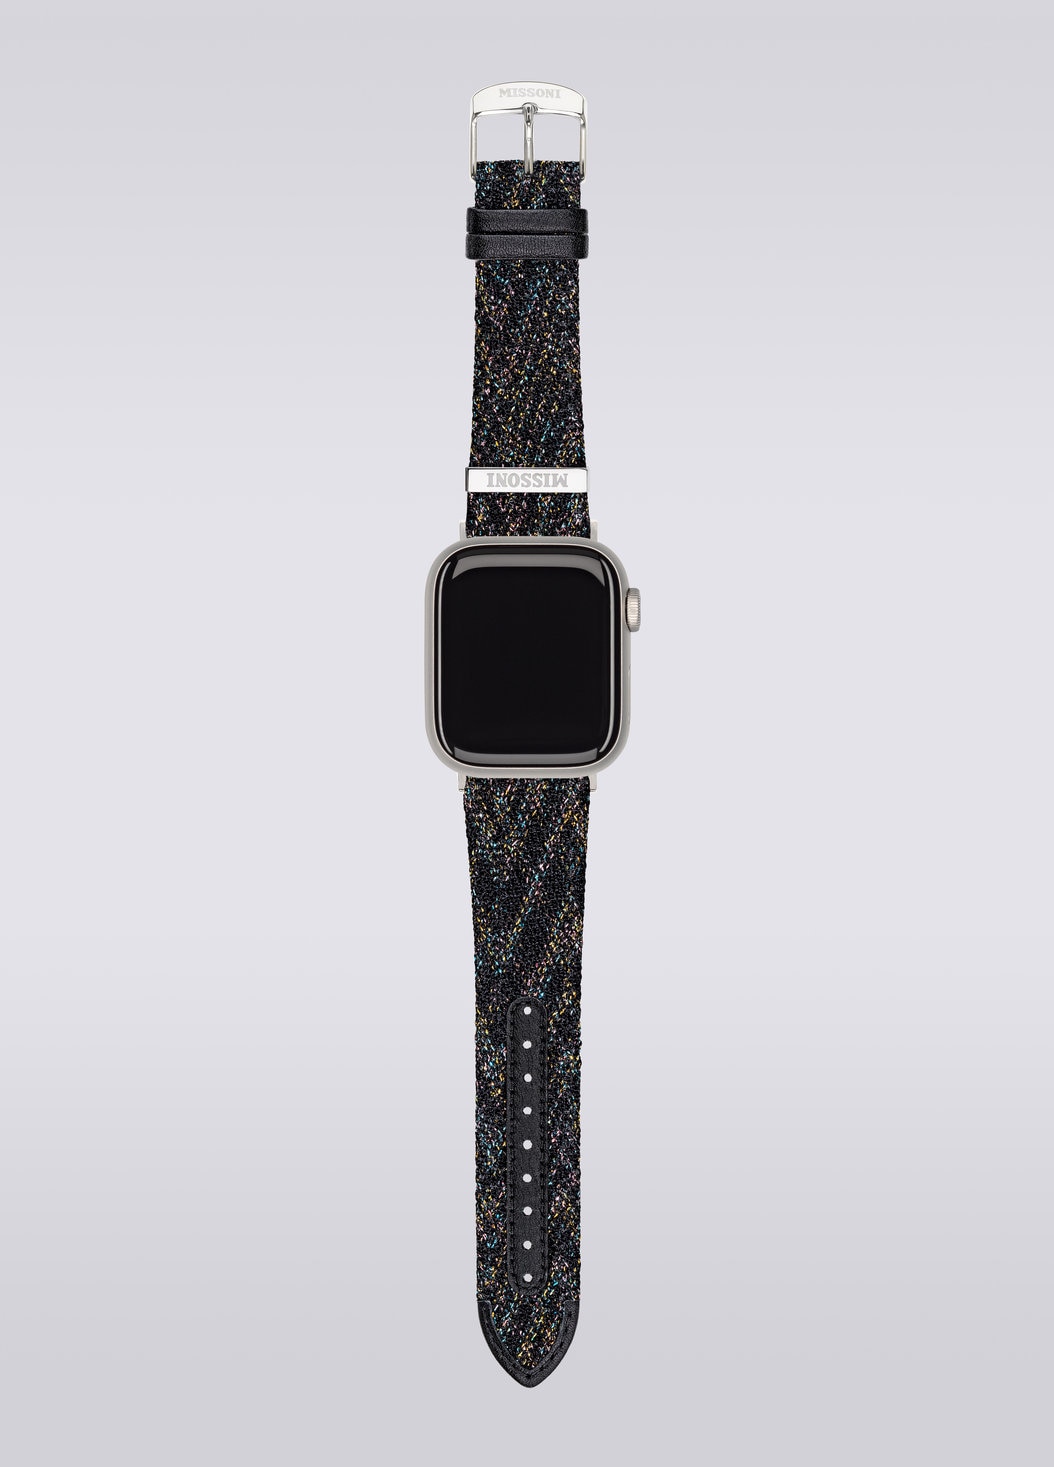 Missoniファブリック 22mm Apple watch対応ストラップ, ブラック    - 8053147046242 - 3